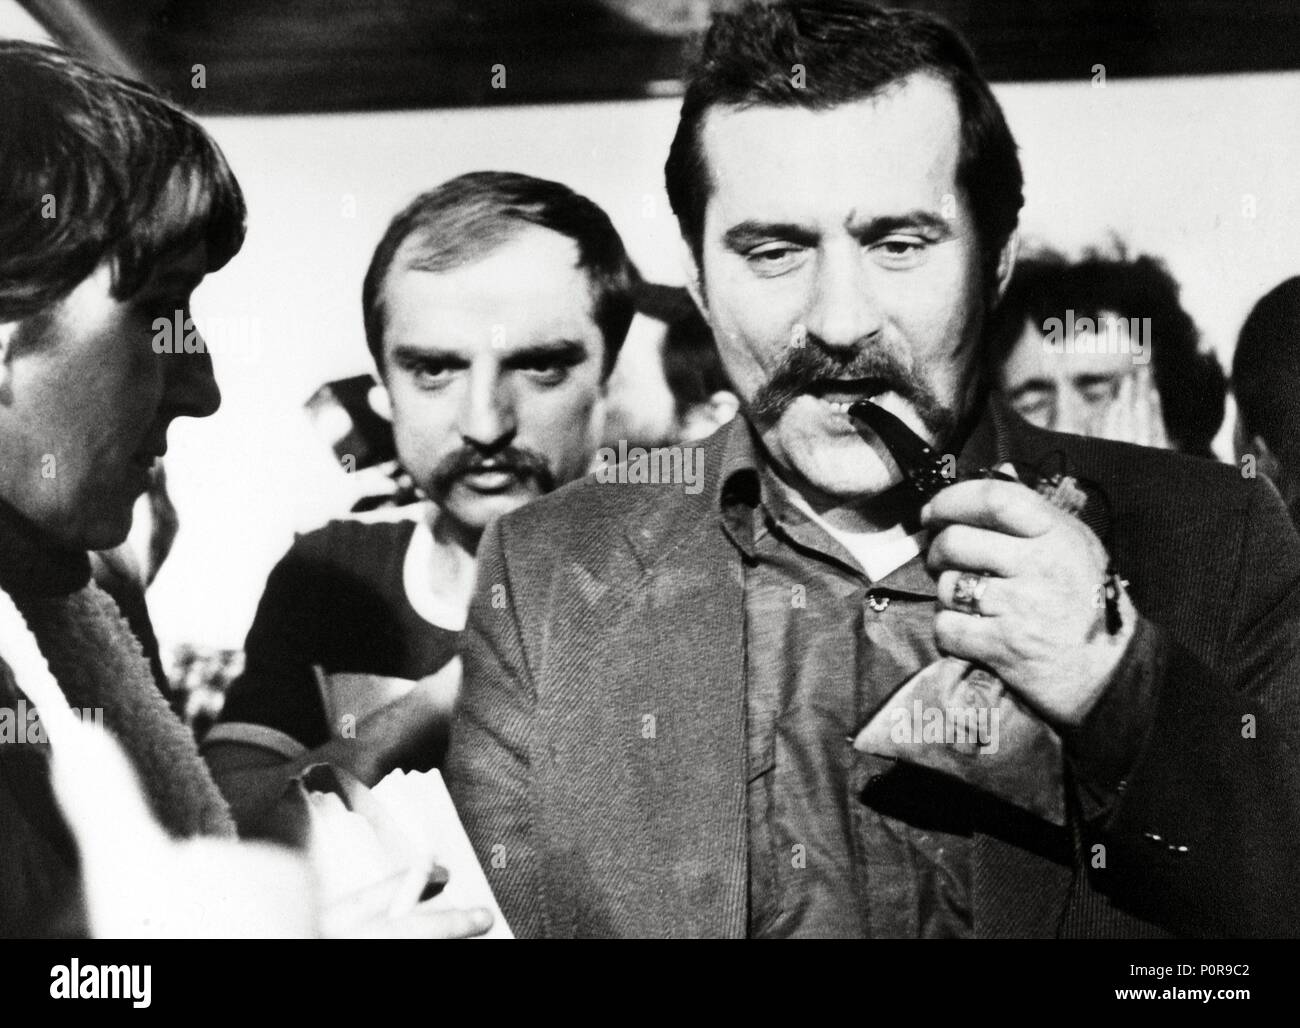 Original Film Title: CZLOWIEK Z ZELAZA.  English Title: MAN OF IRON.  Film Director: ANDRZEJ WAJDA.  Year: 1981.  Stars: LECH WALESA. Credit: FILM POLSKI / Album Stock Photo